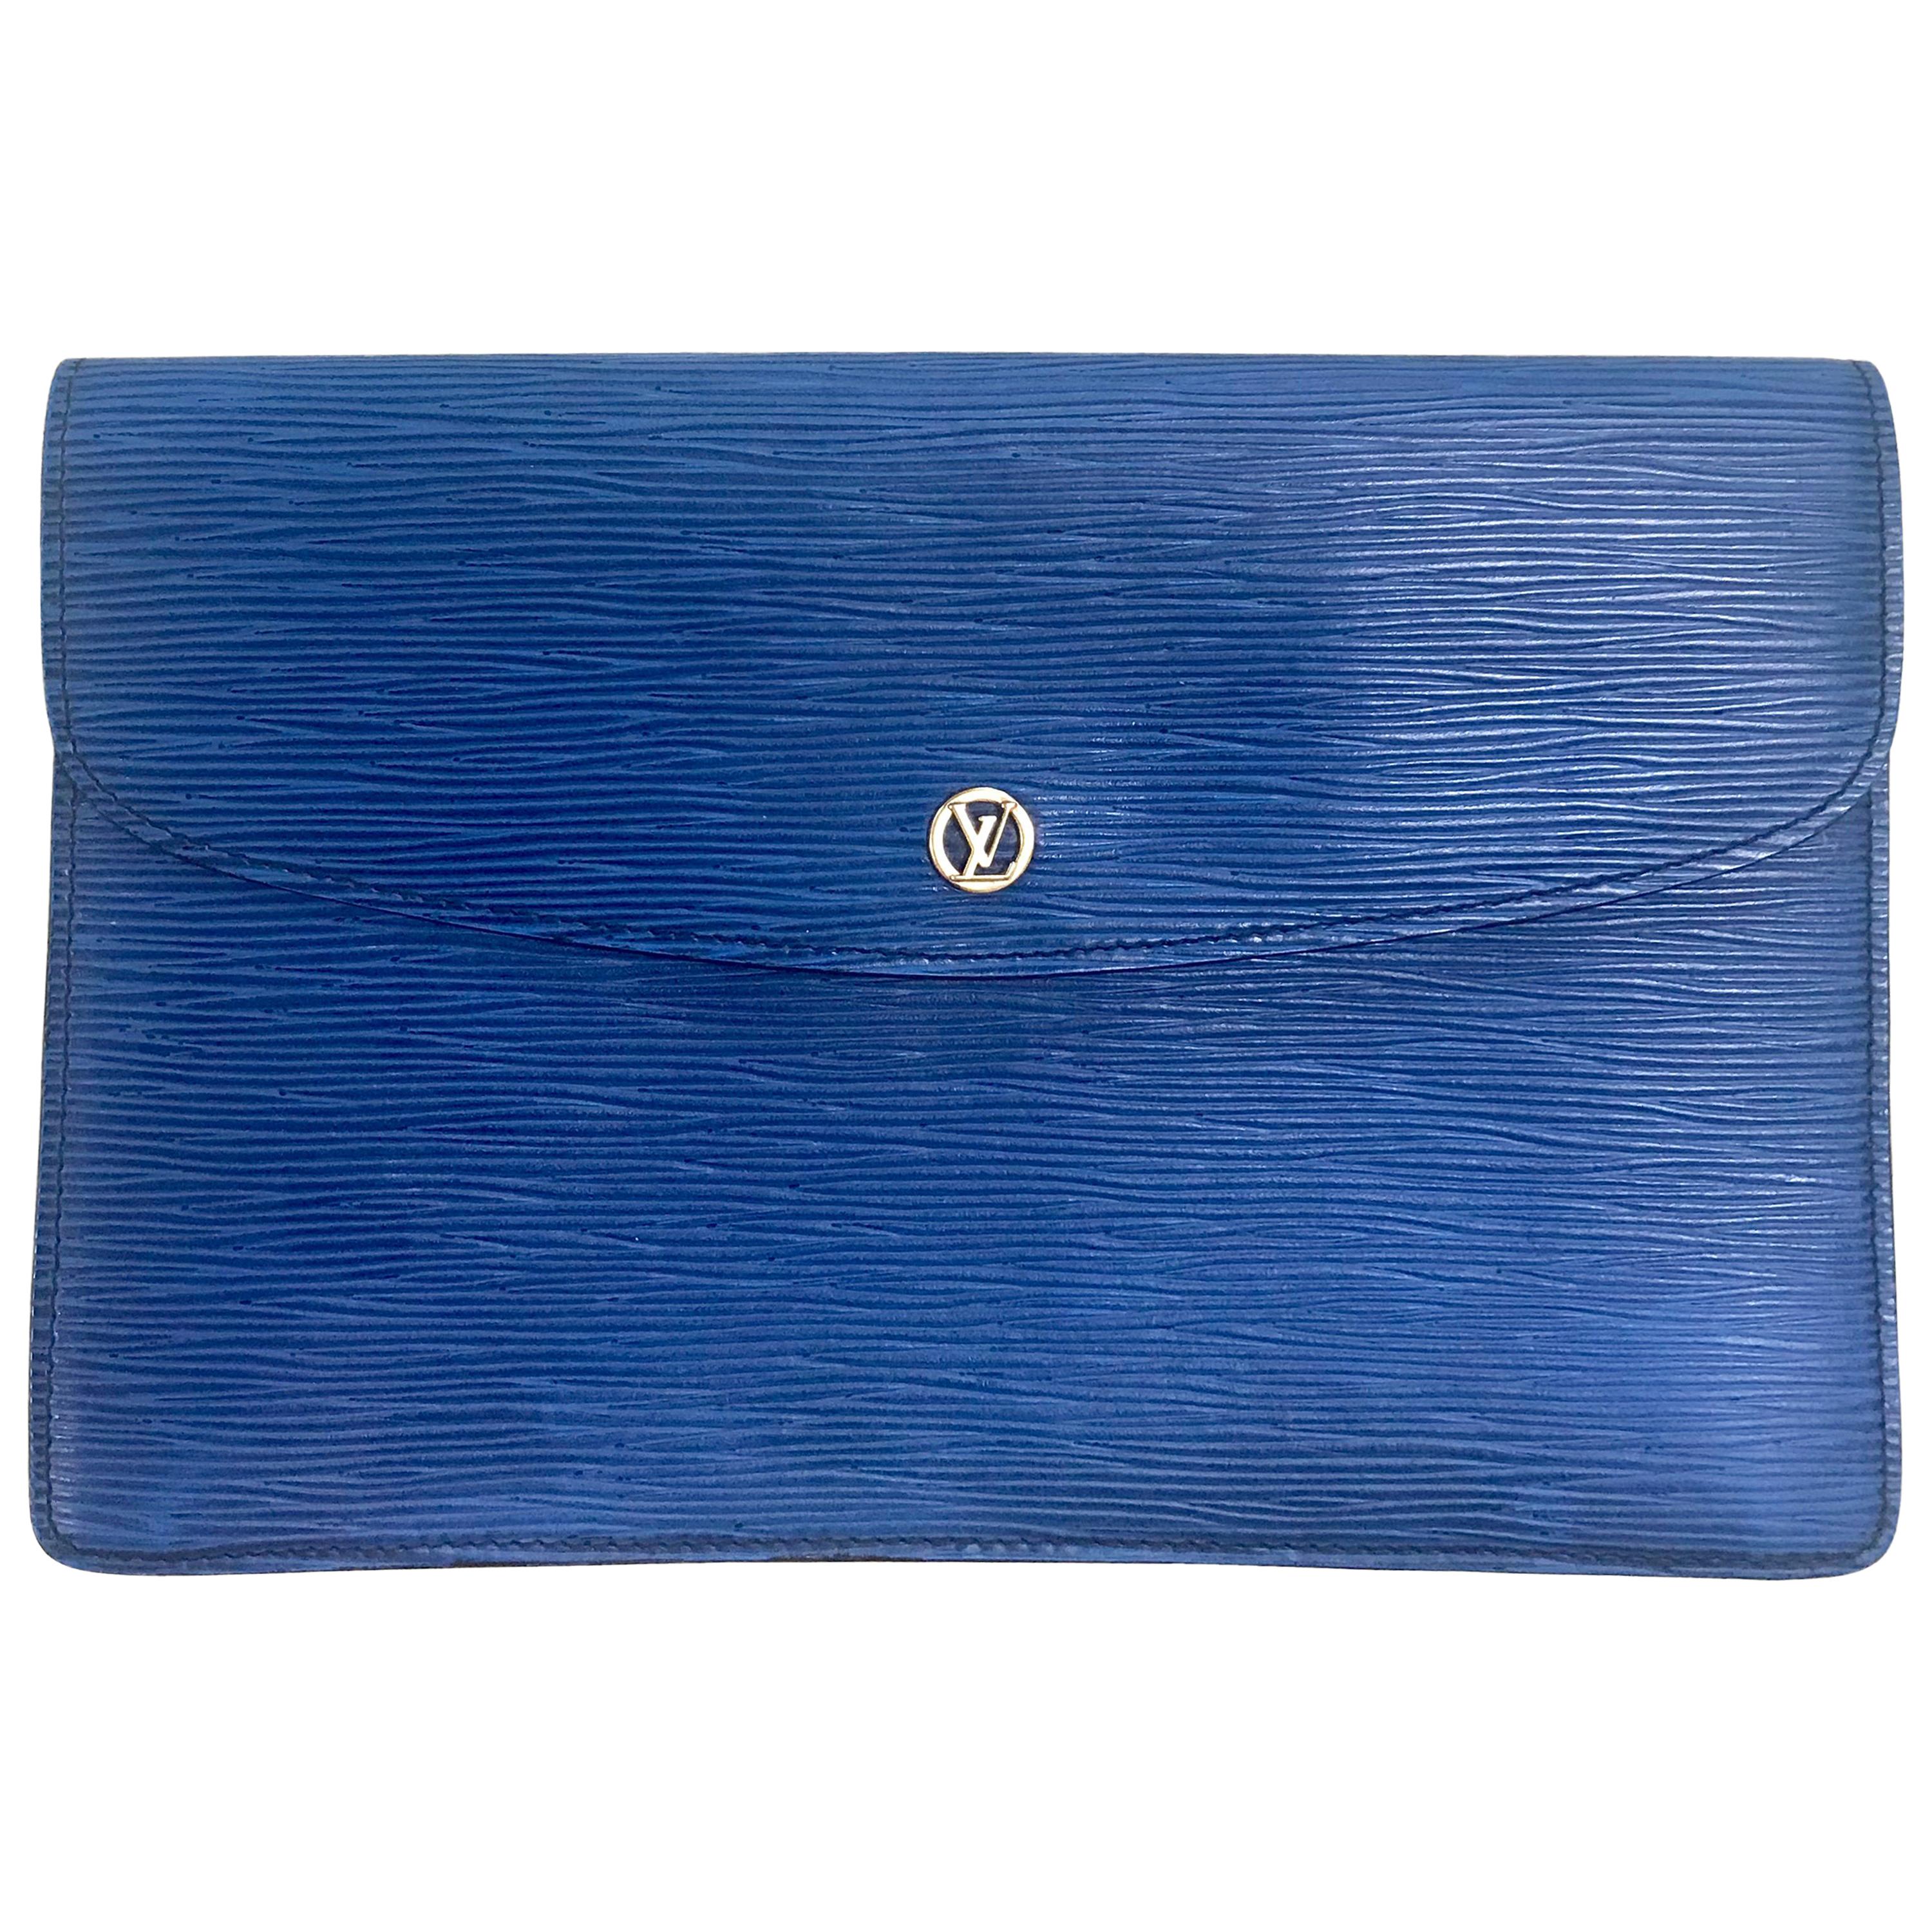 Vintage Louis Vuitton blue epi envelope style clutch bag with gold tone LV  motif